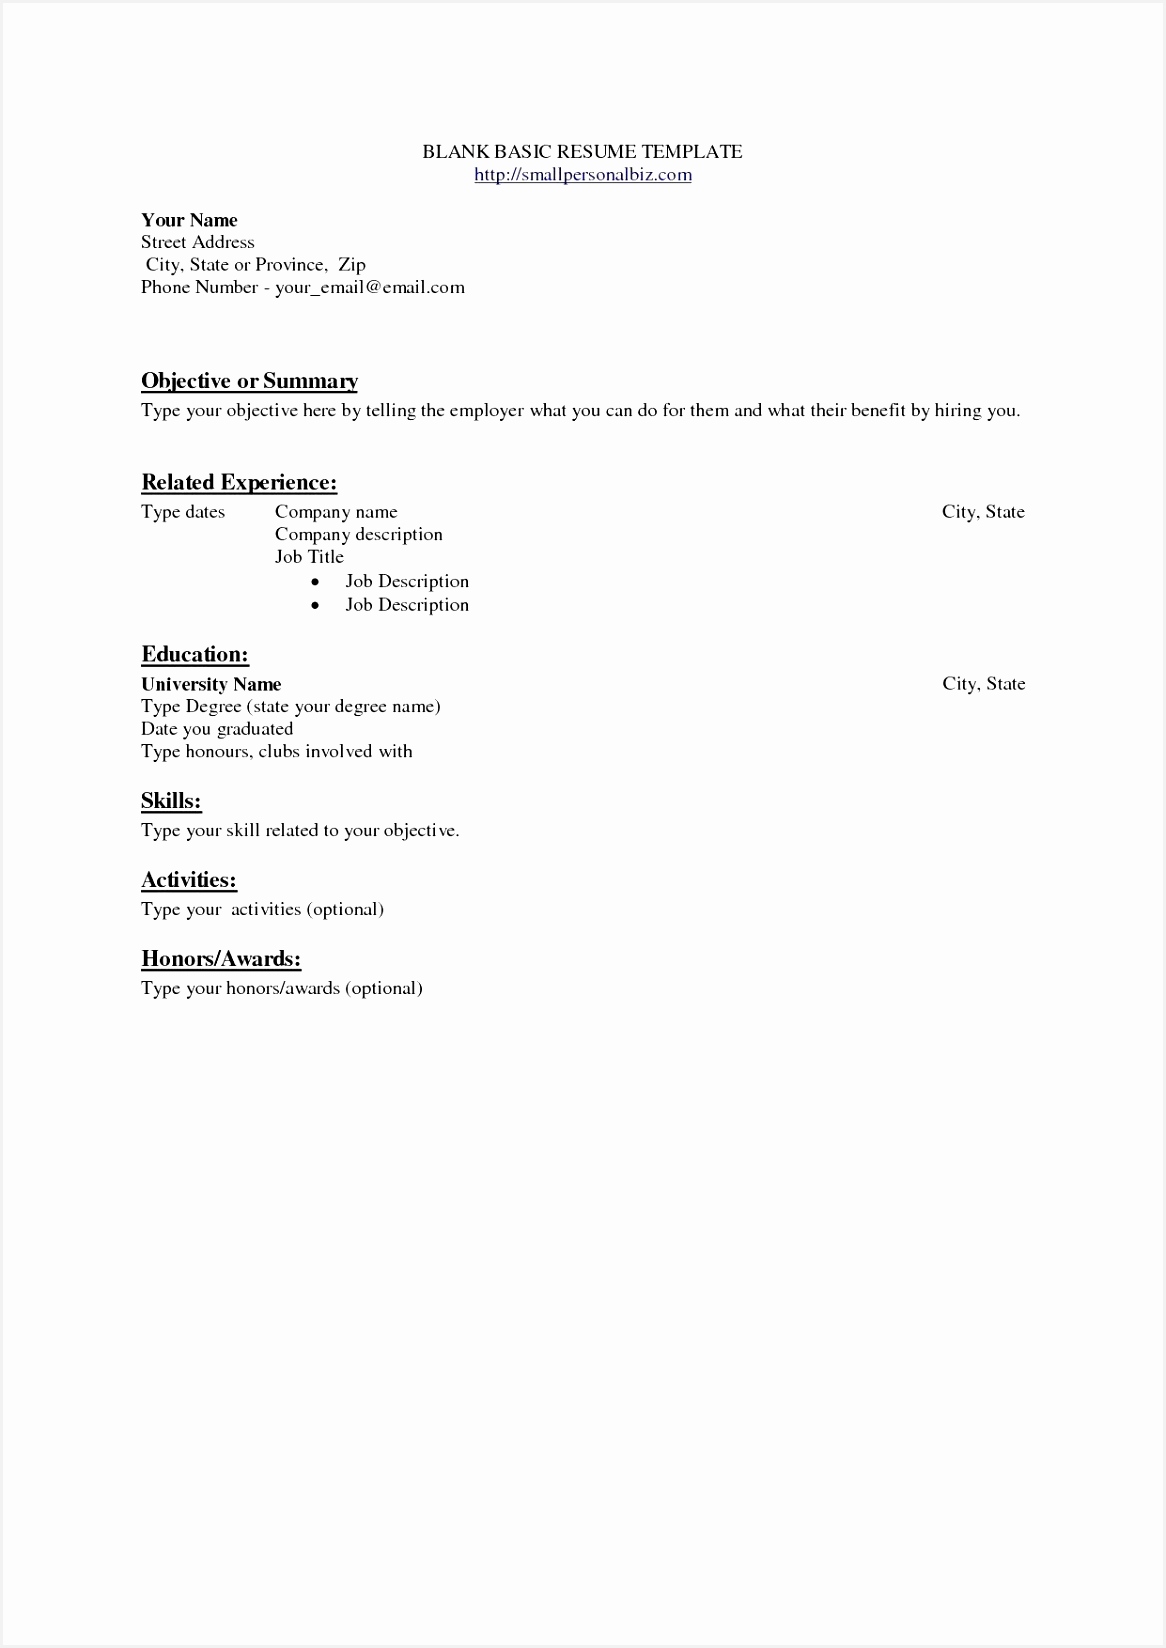 resume for job example inspirational resume sample good valid restaurant resume sample modest examples 0d of resume for job example 16481166dfCig